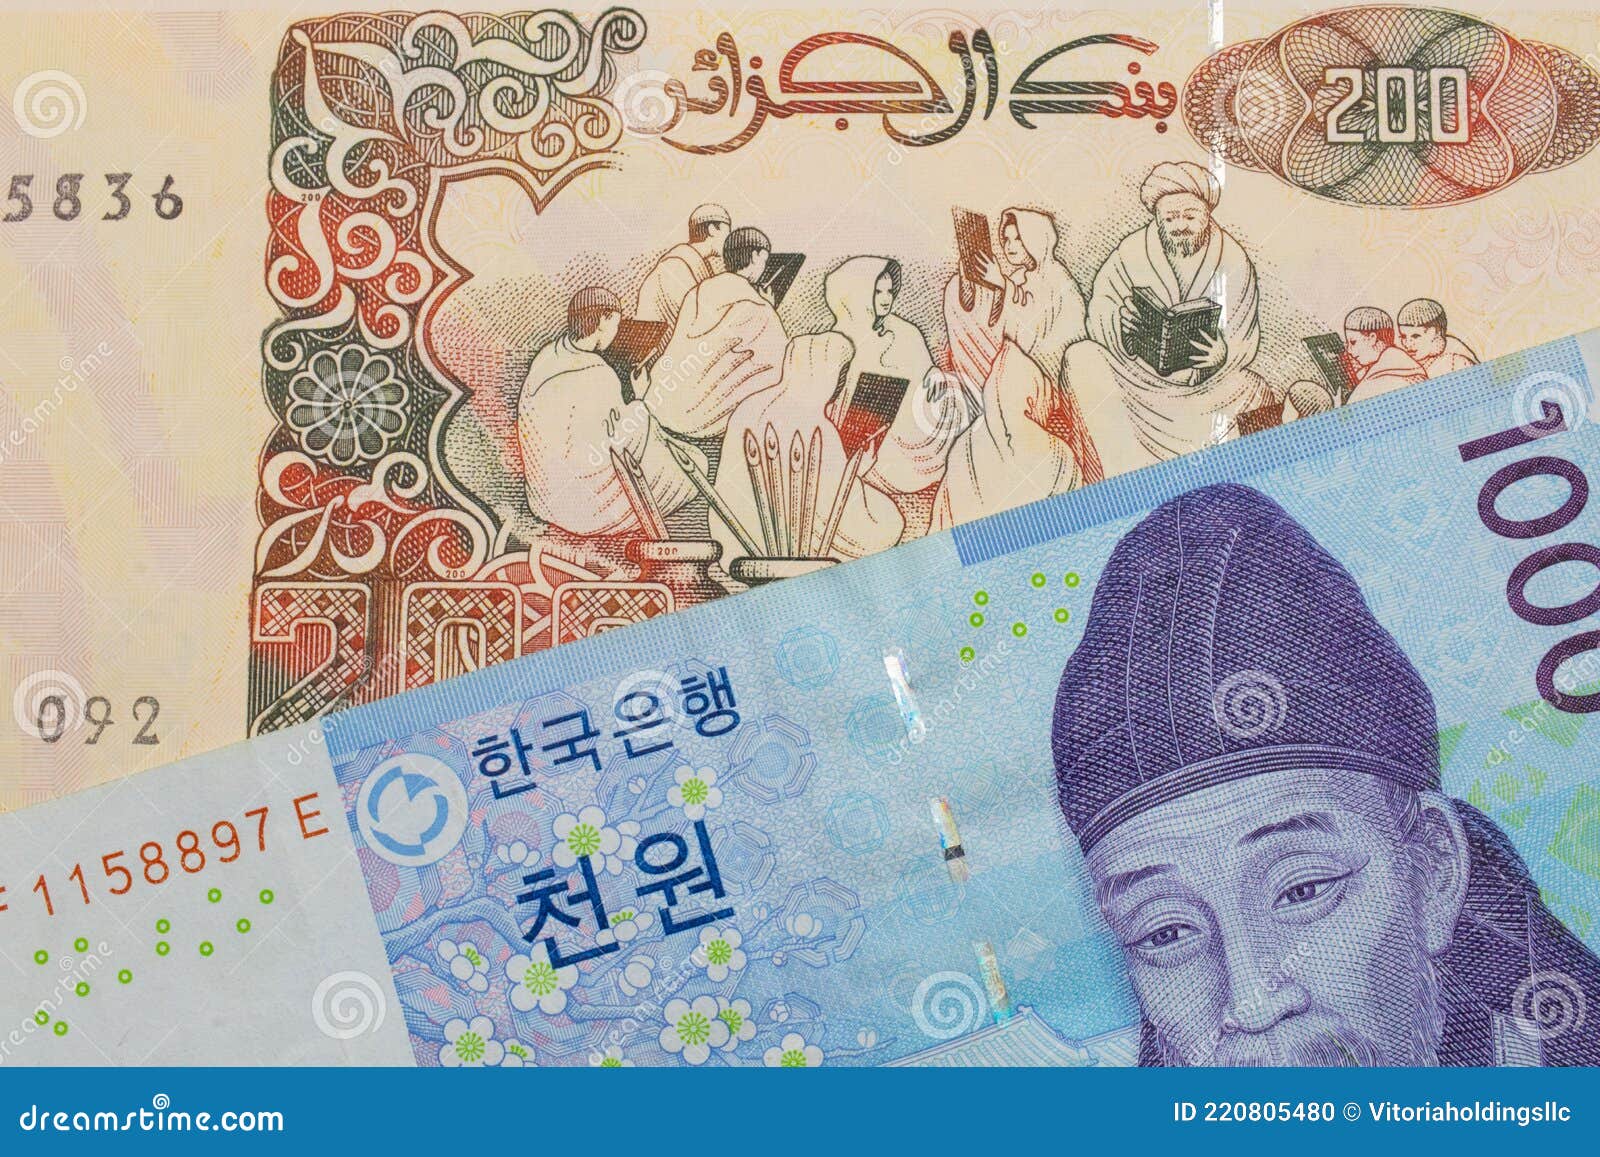 Yen rm 100 to Convert Korean